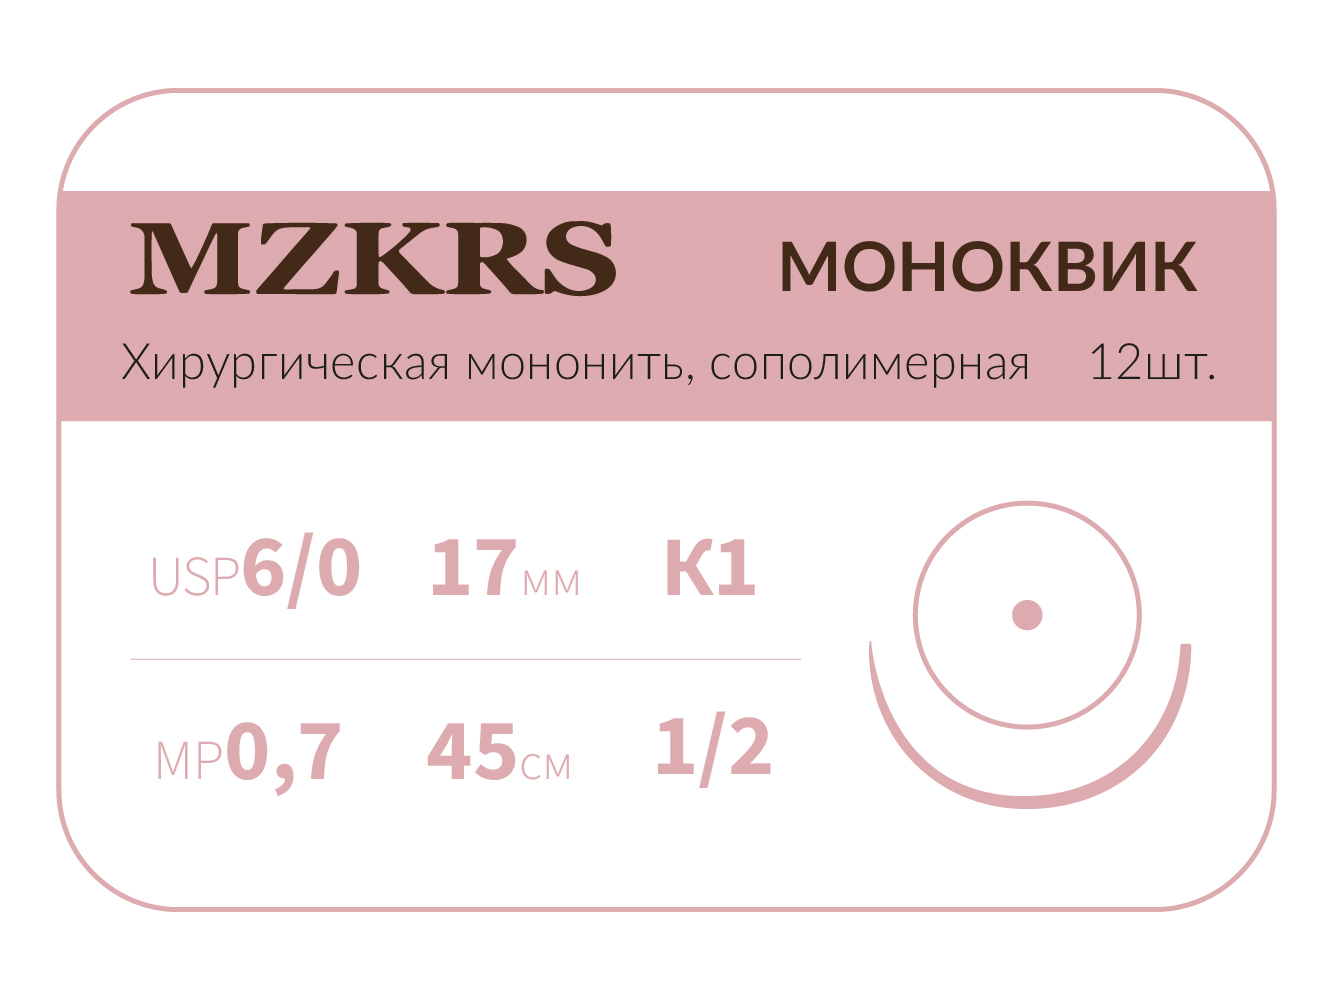 1712К1 Premium-6/0 (0,7)45 МОНК МОНОКВИК хирургическая мононить, сополимерная, колющая игла, MZKRS (Россия)